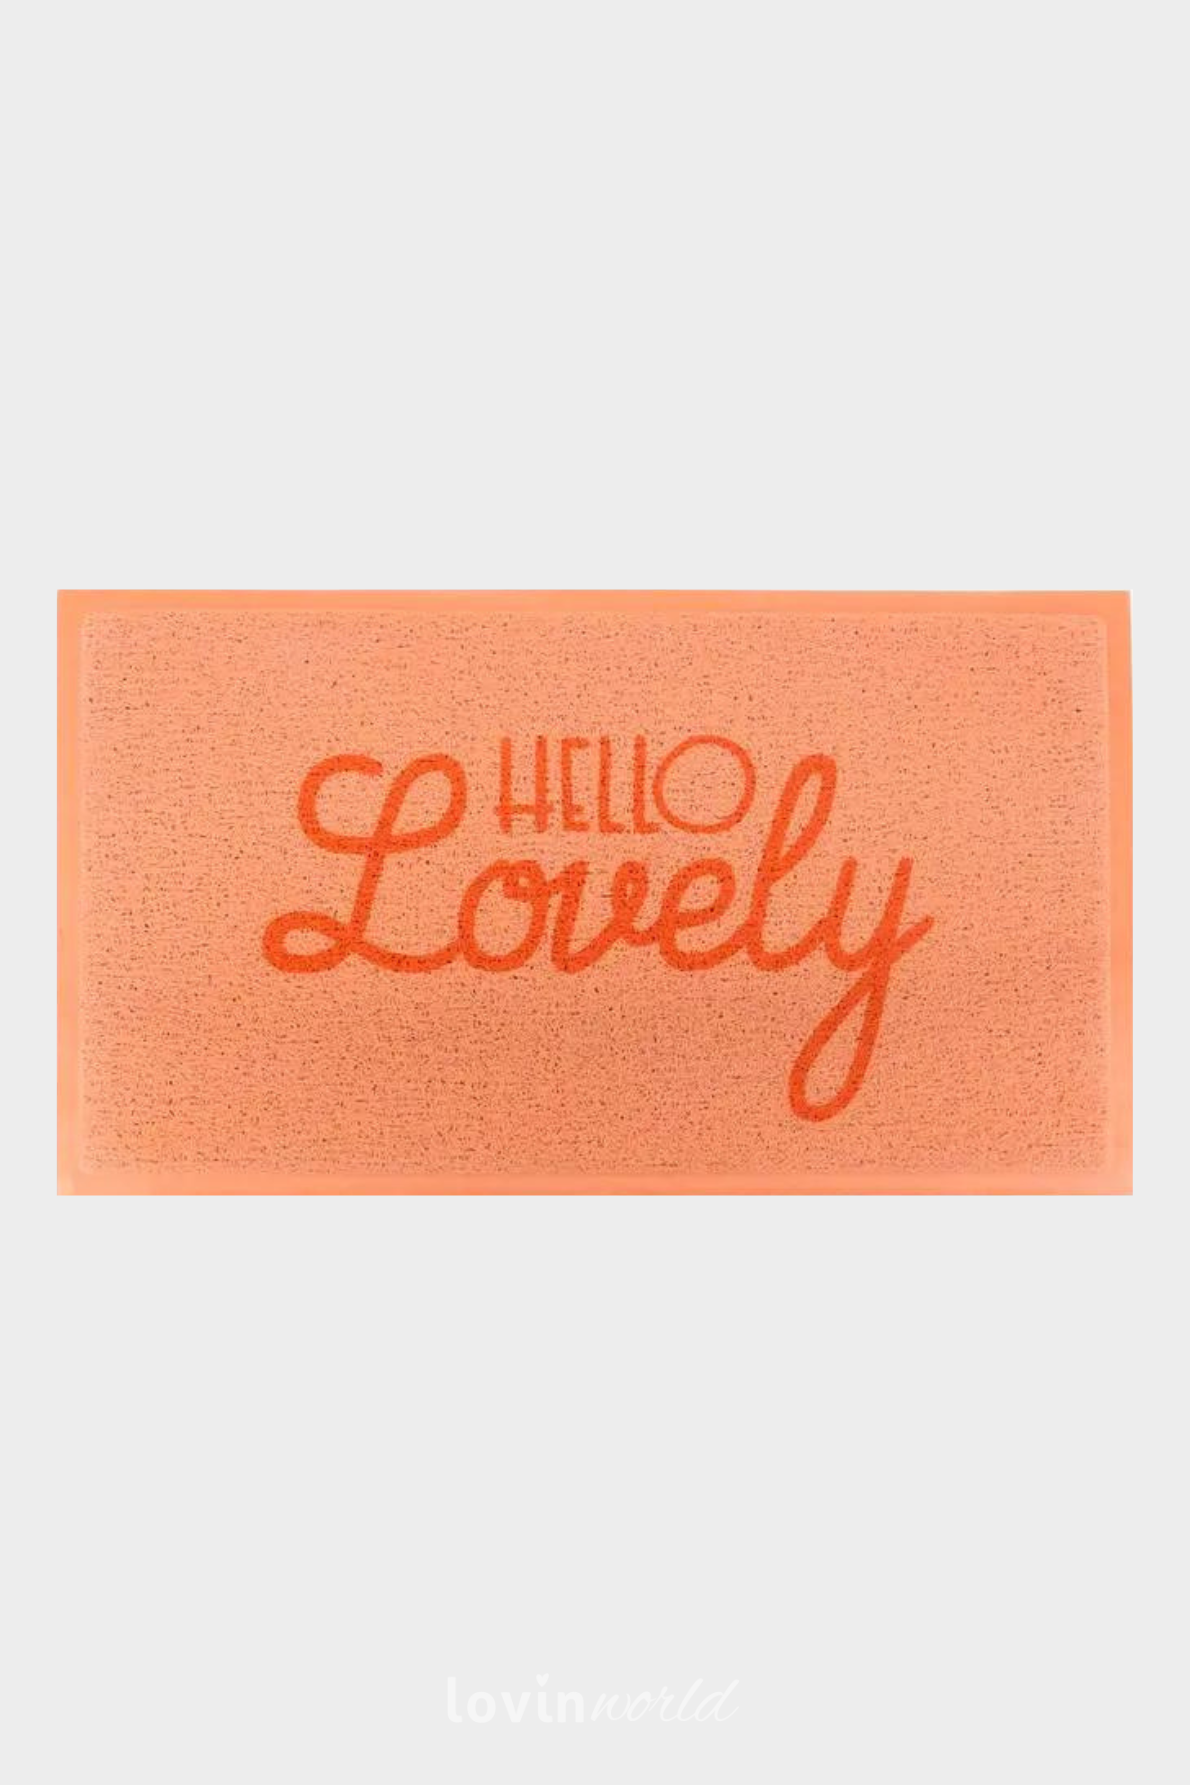 Zerbino particolare Hello Lovely, in colore arancione 40x70 cm.-1